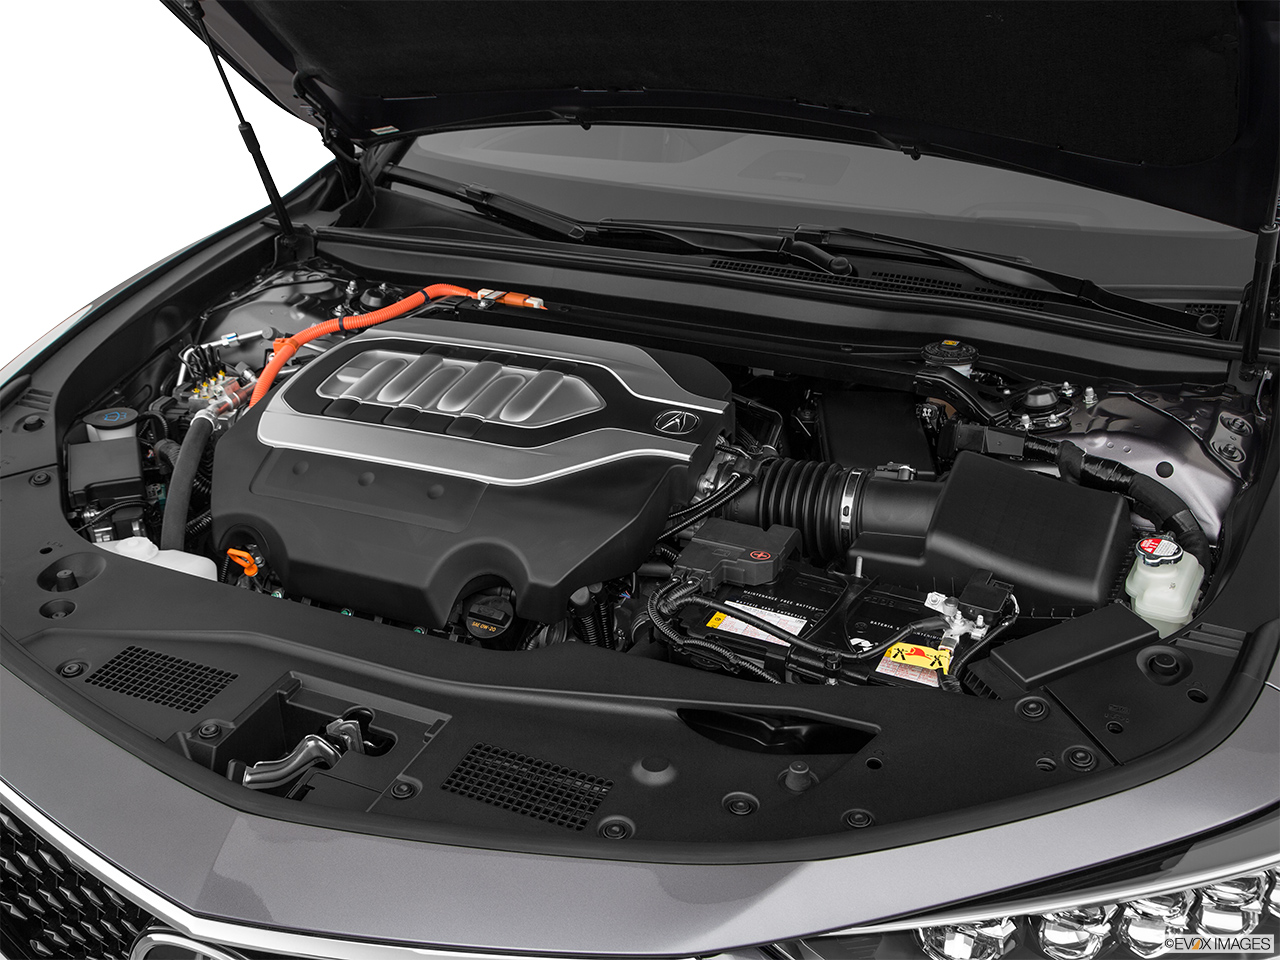 2020 Acura RLX Sport Hybrid SH-AWD Engine. 